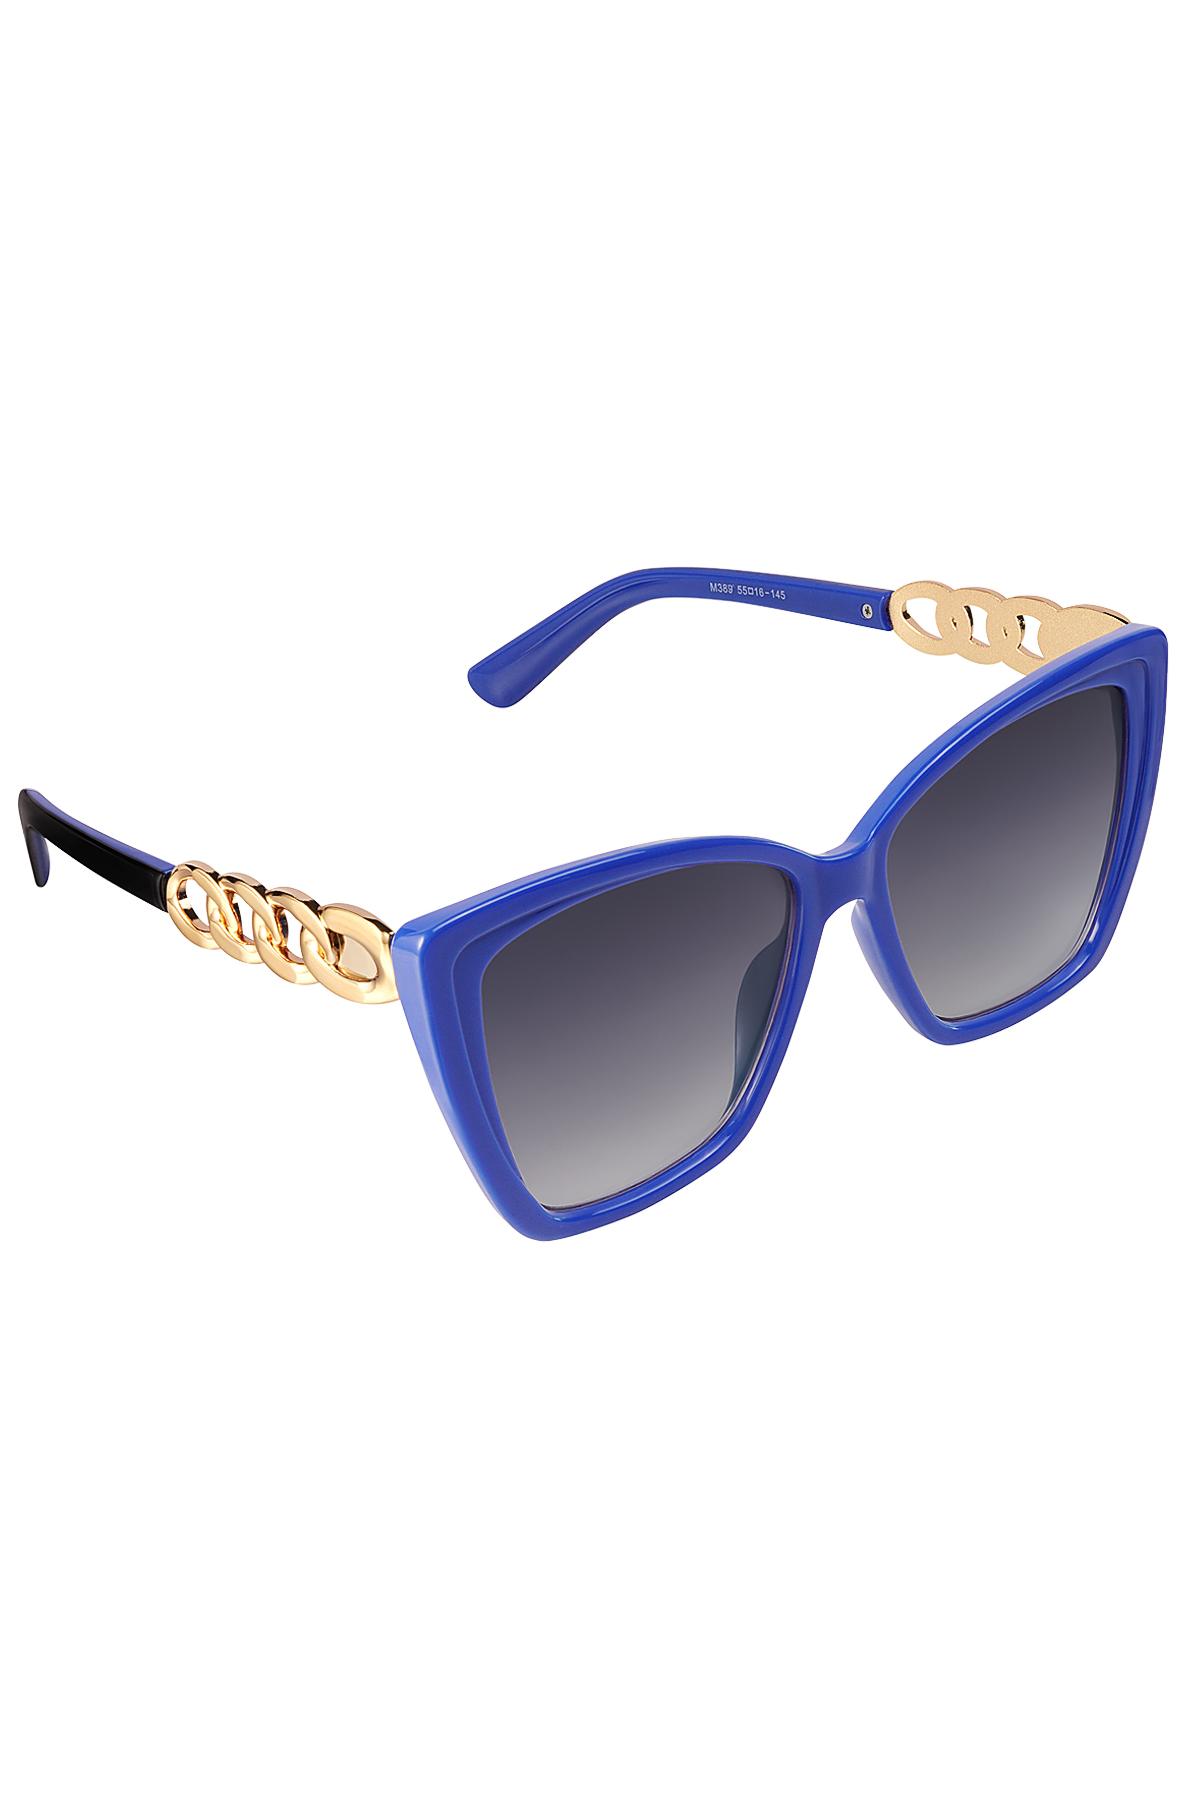 Dettaglio catena occhiali da sole Blue PC One size